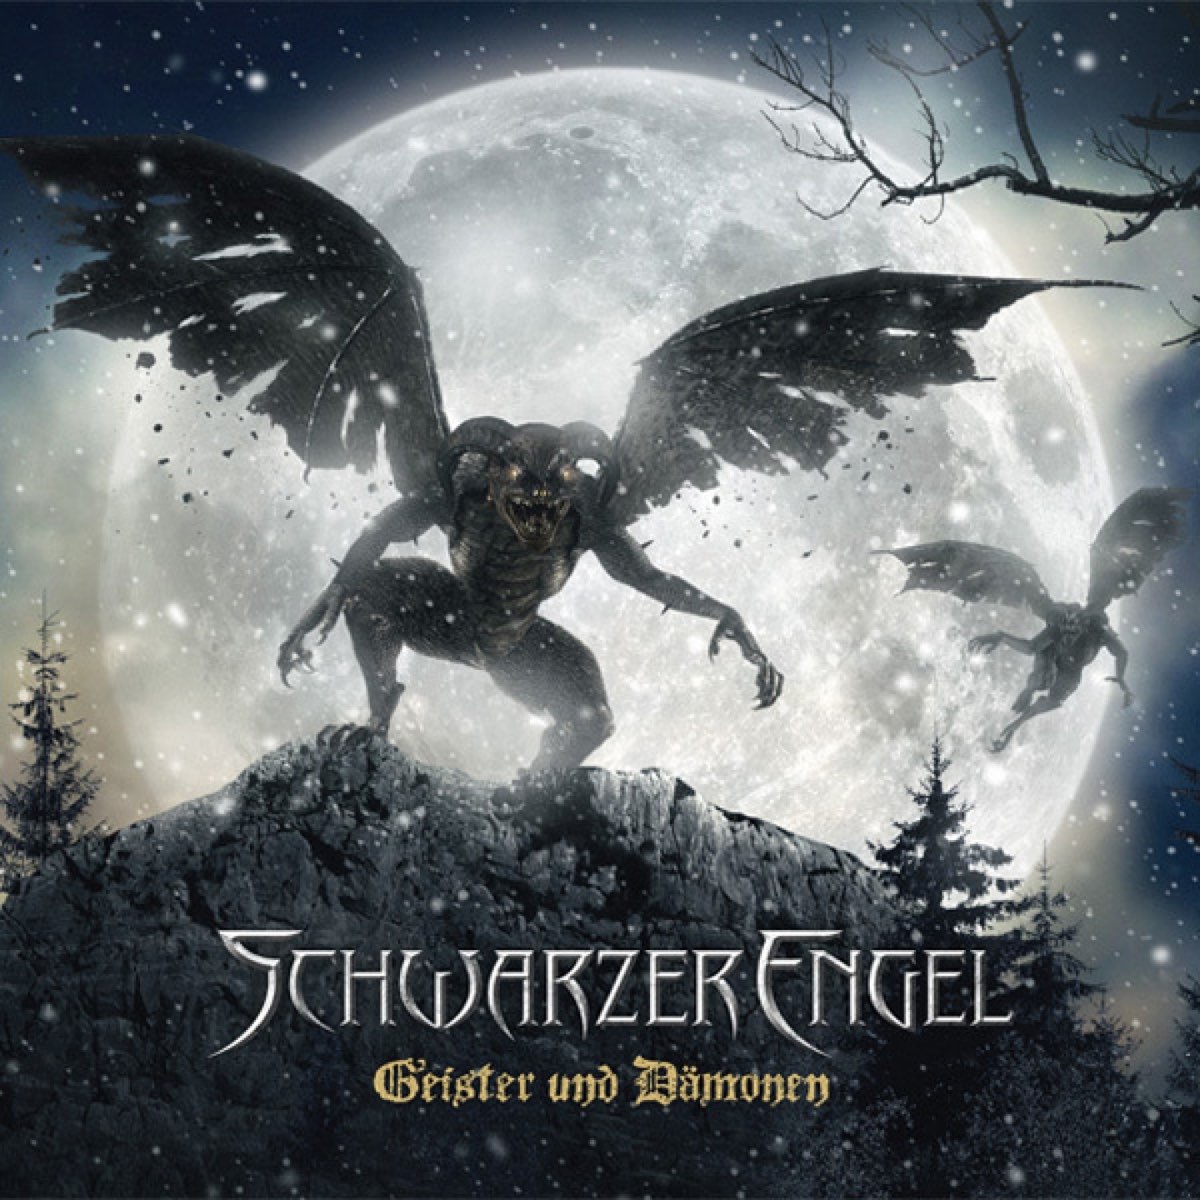 Geister und Dämonen - EP by Schwarzer Engel on Apple Music